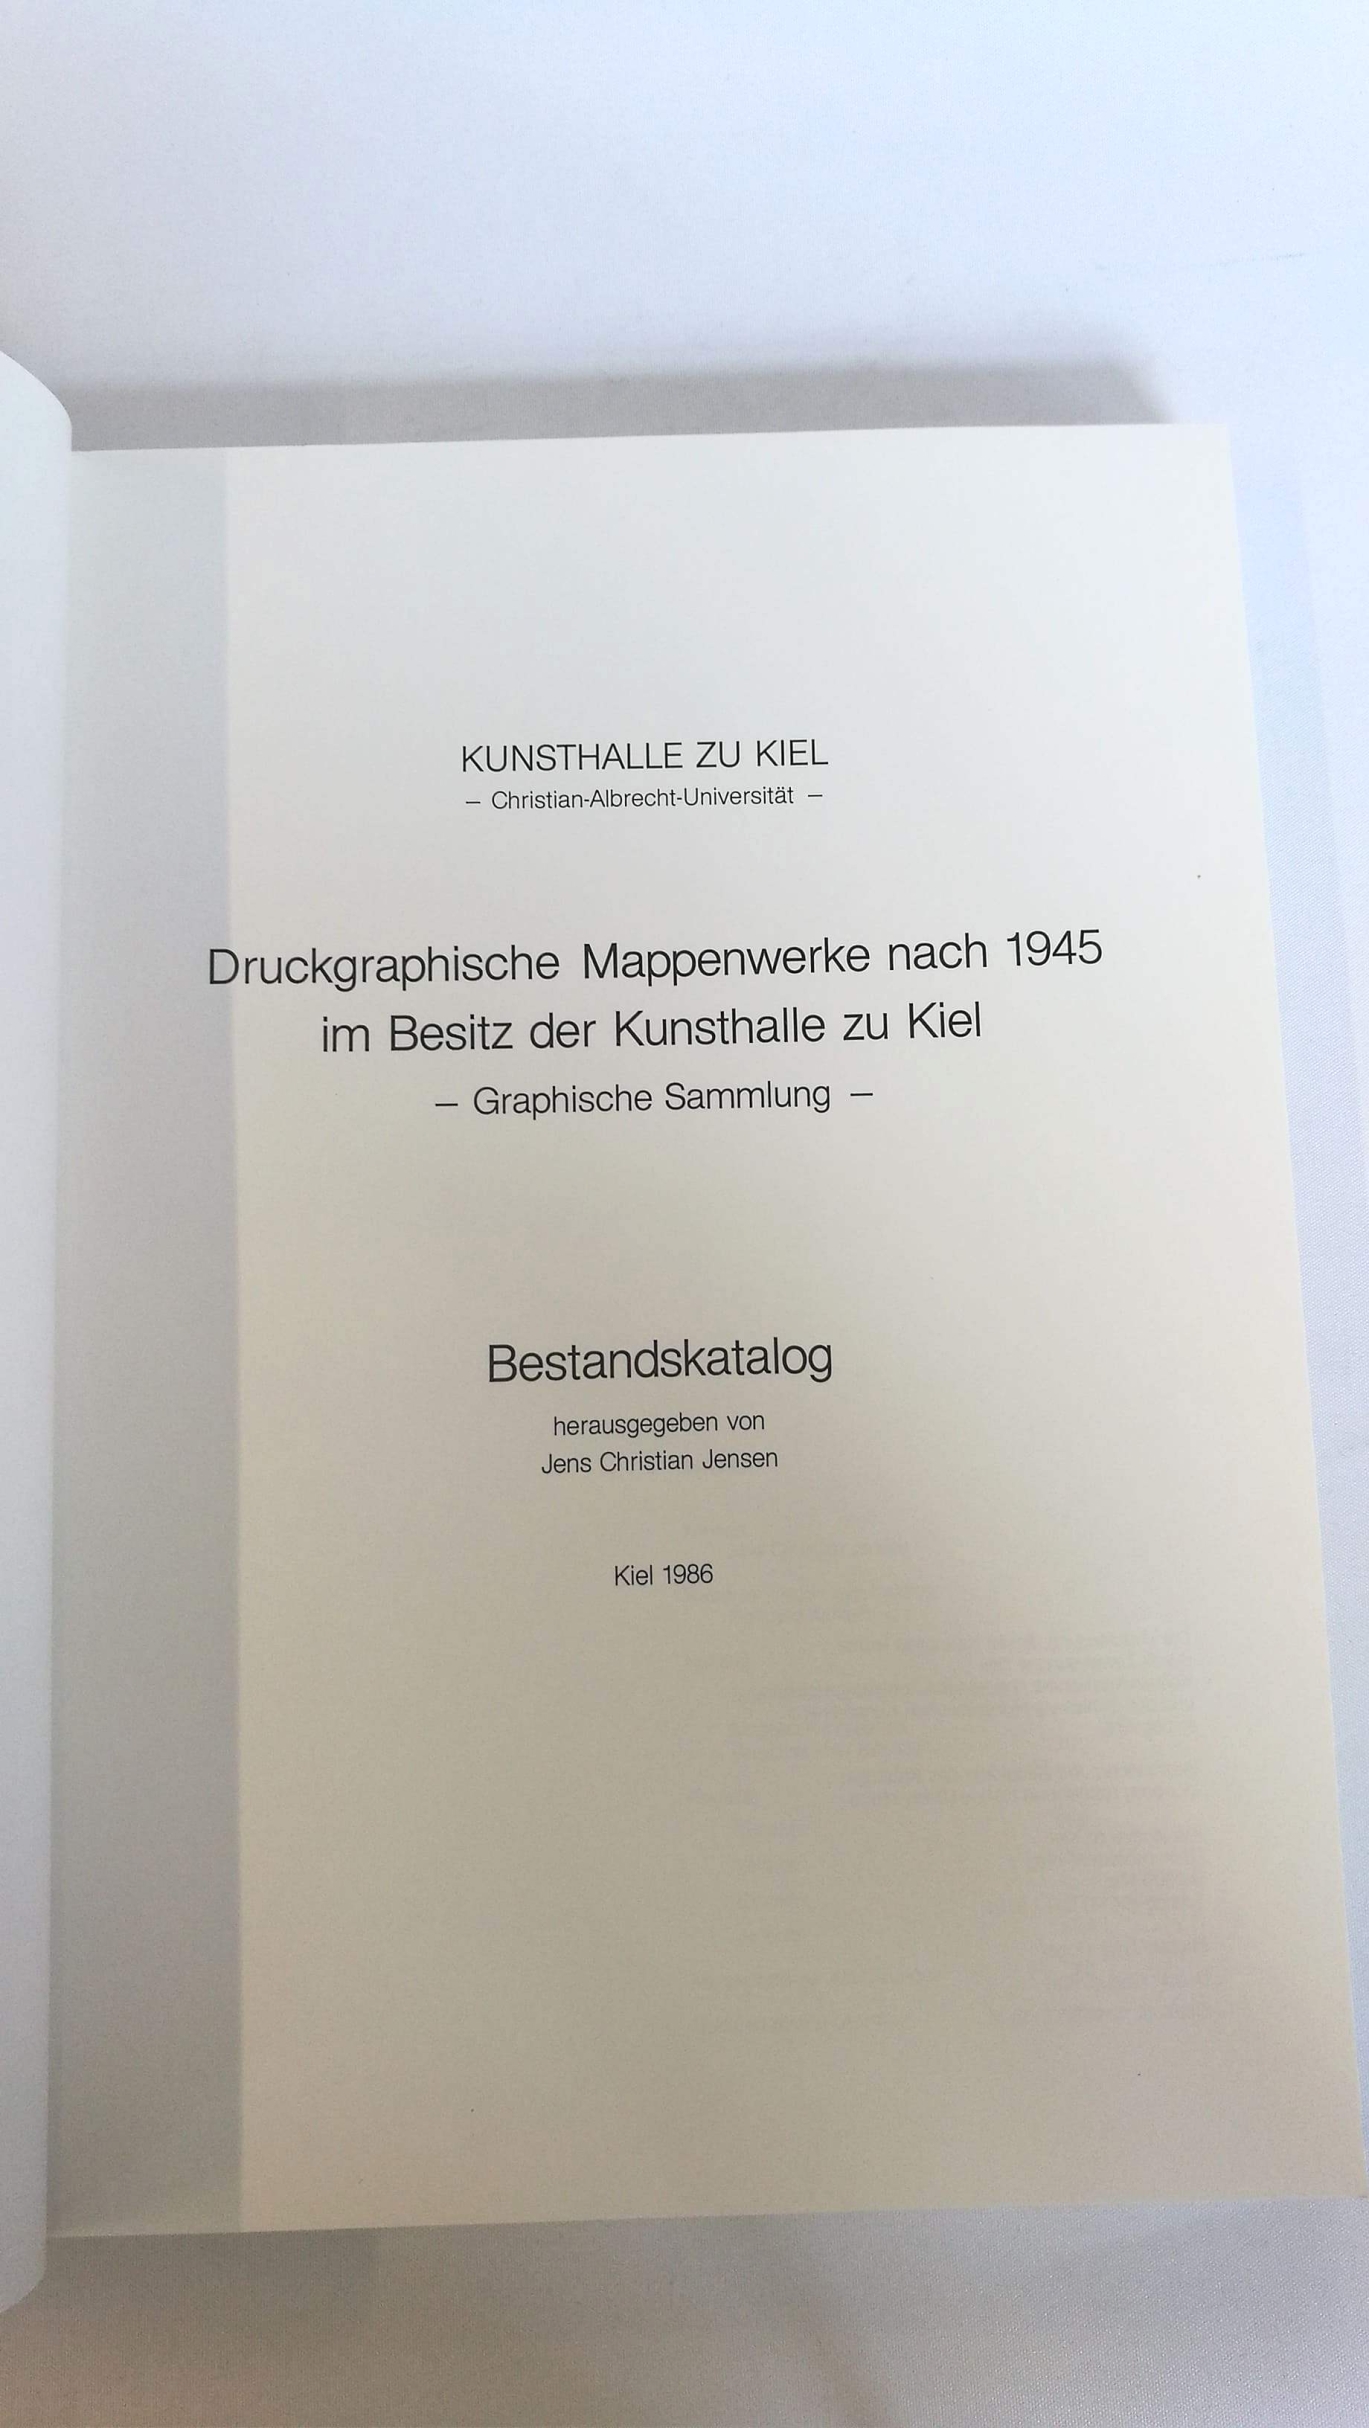 Jensen, Jens Christian: Druckgraphische Mappenwerke nach 1945 im Besitz der Kunsthalle zu Kiel, Graphische Sammlung Bestandskatalog